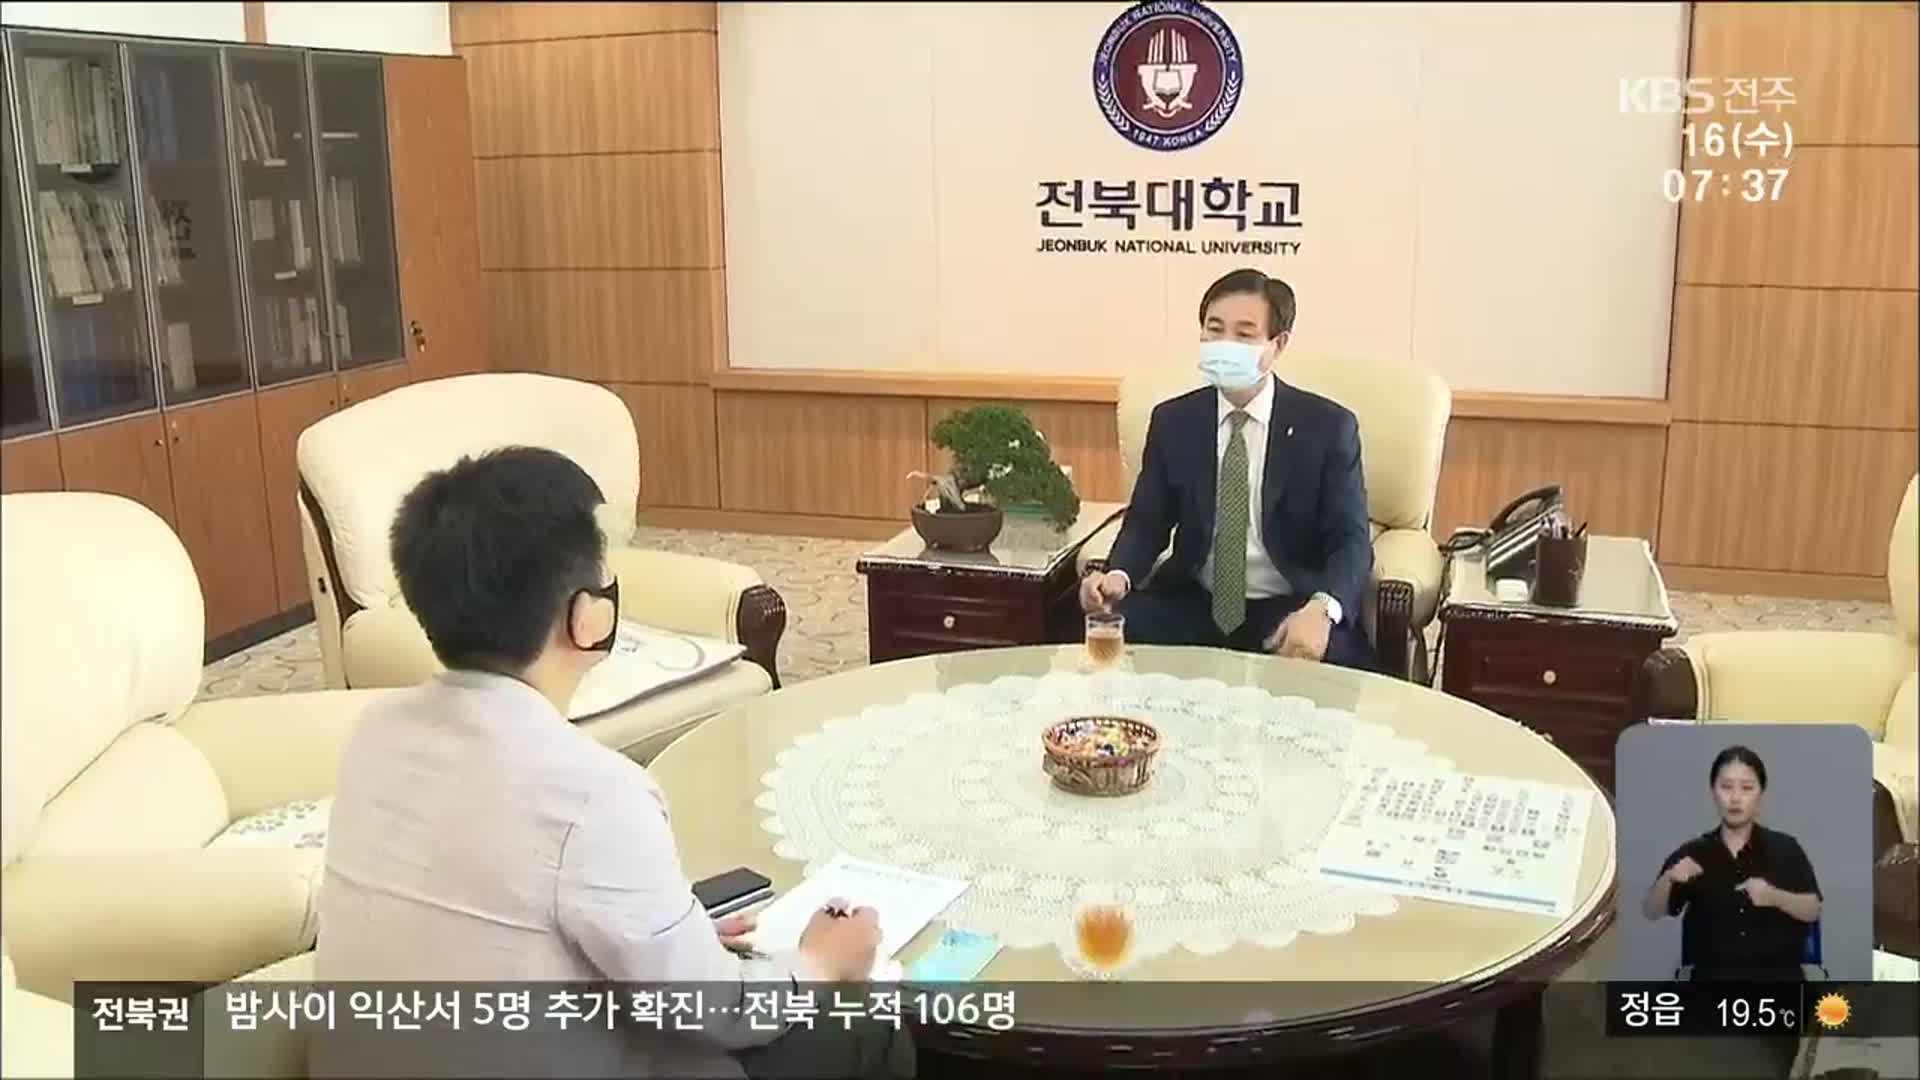 코로나19 장기화…국립대 ‘통합 네트워크’ 논의 재개